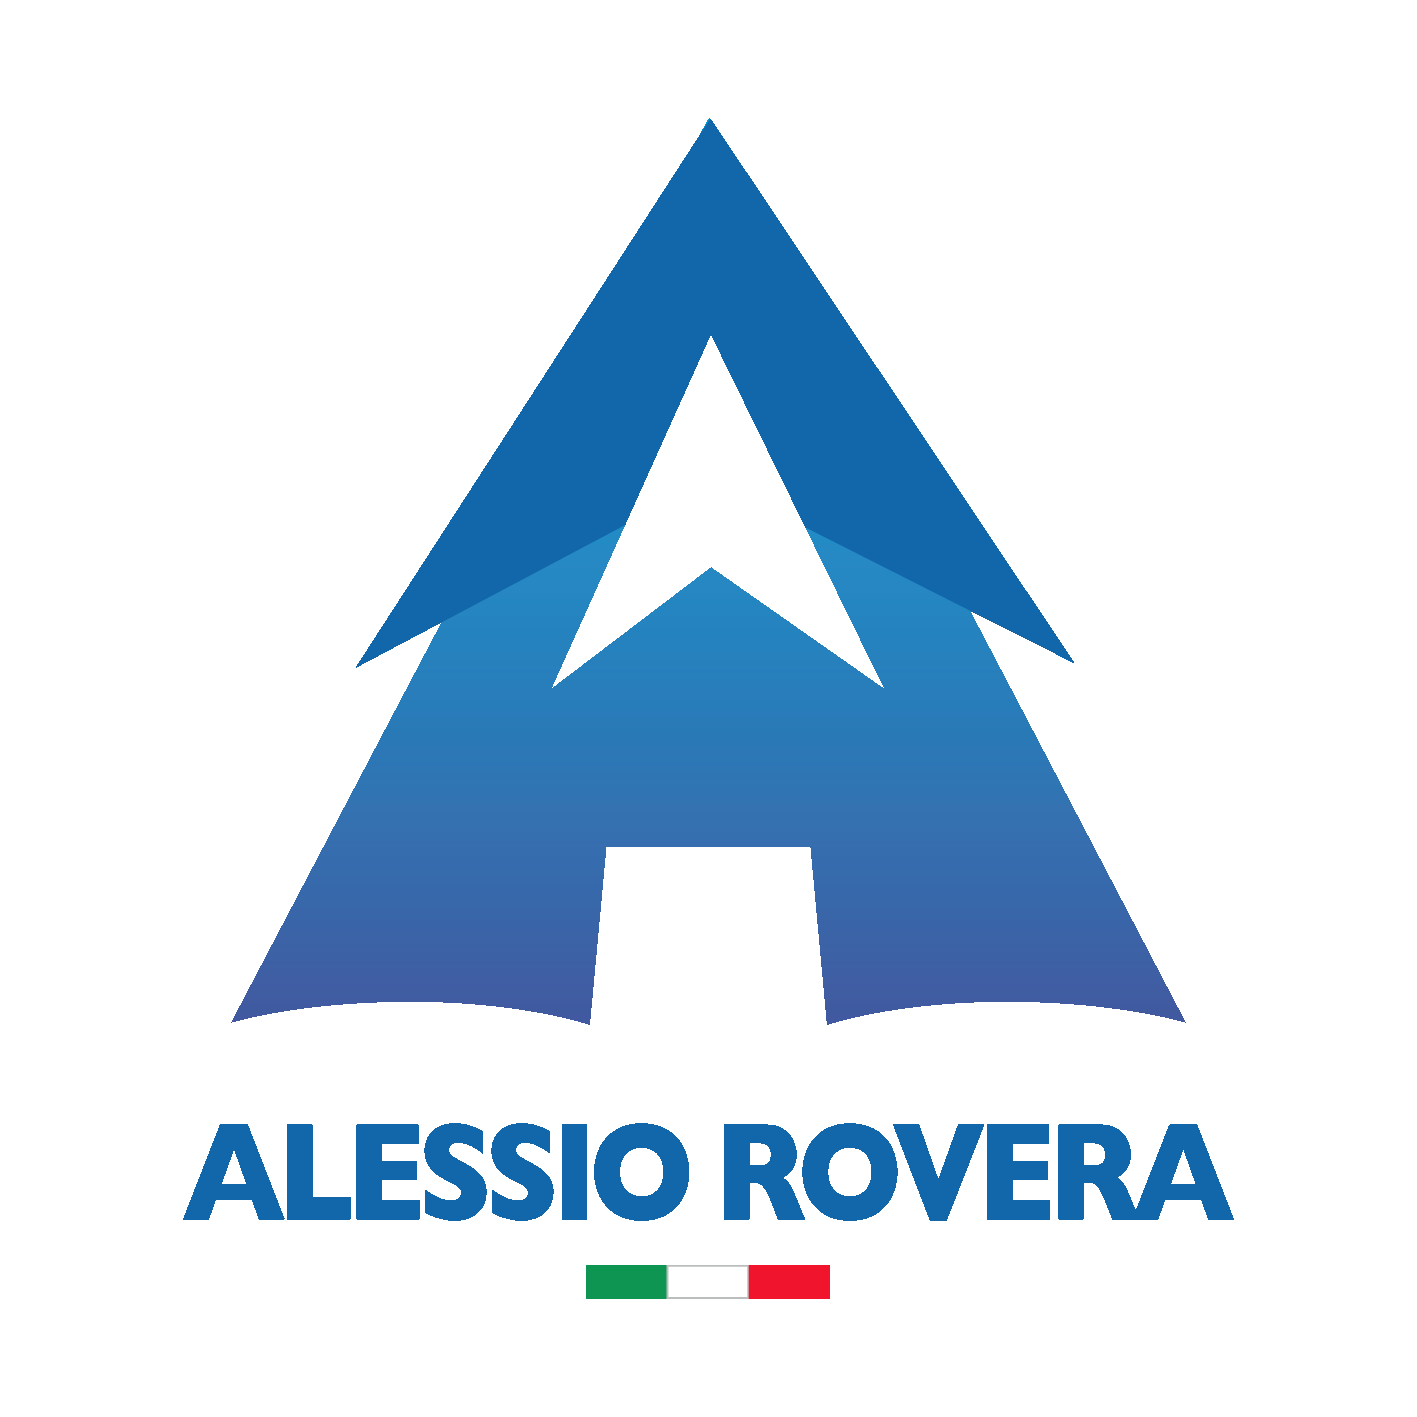 Alessio Rovera